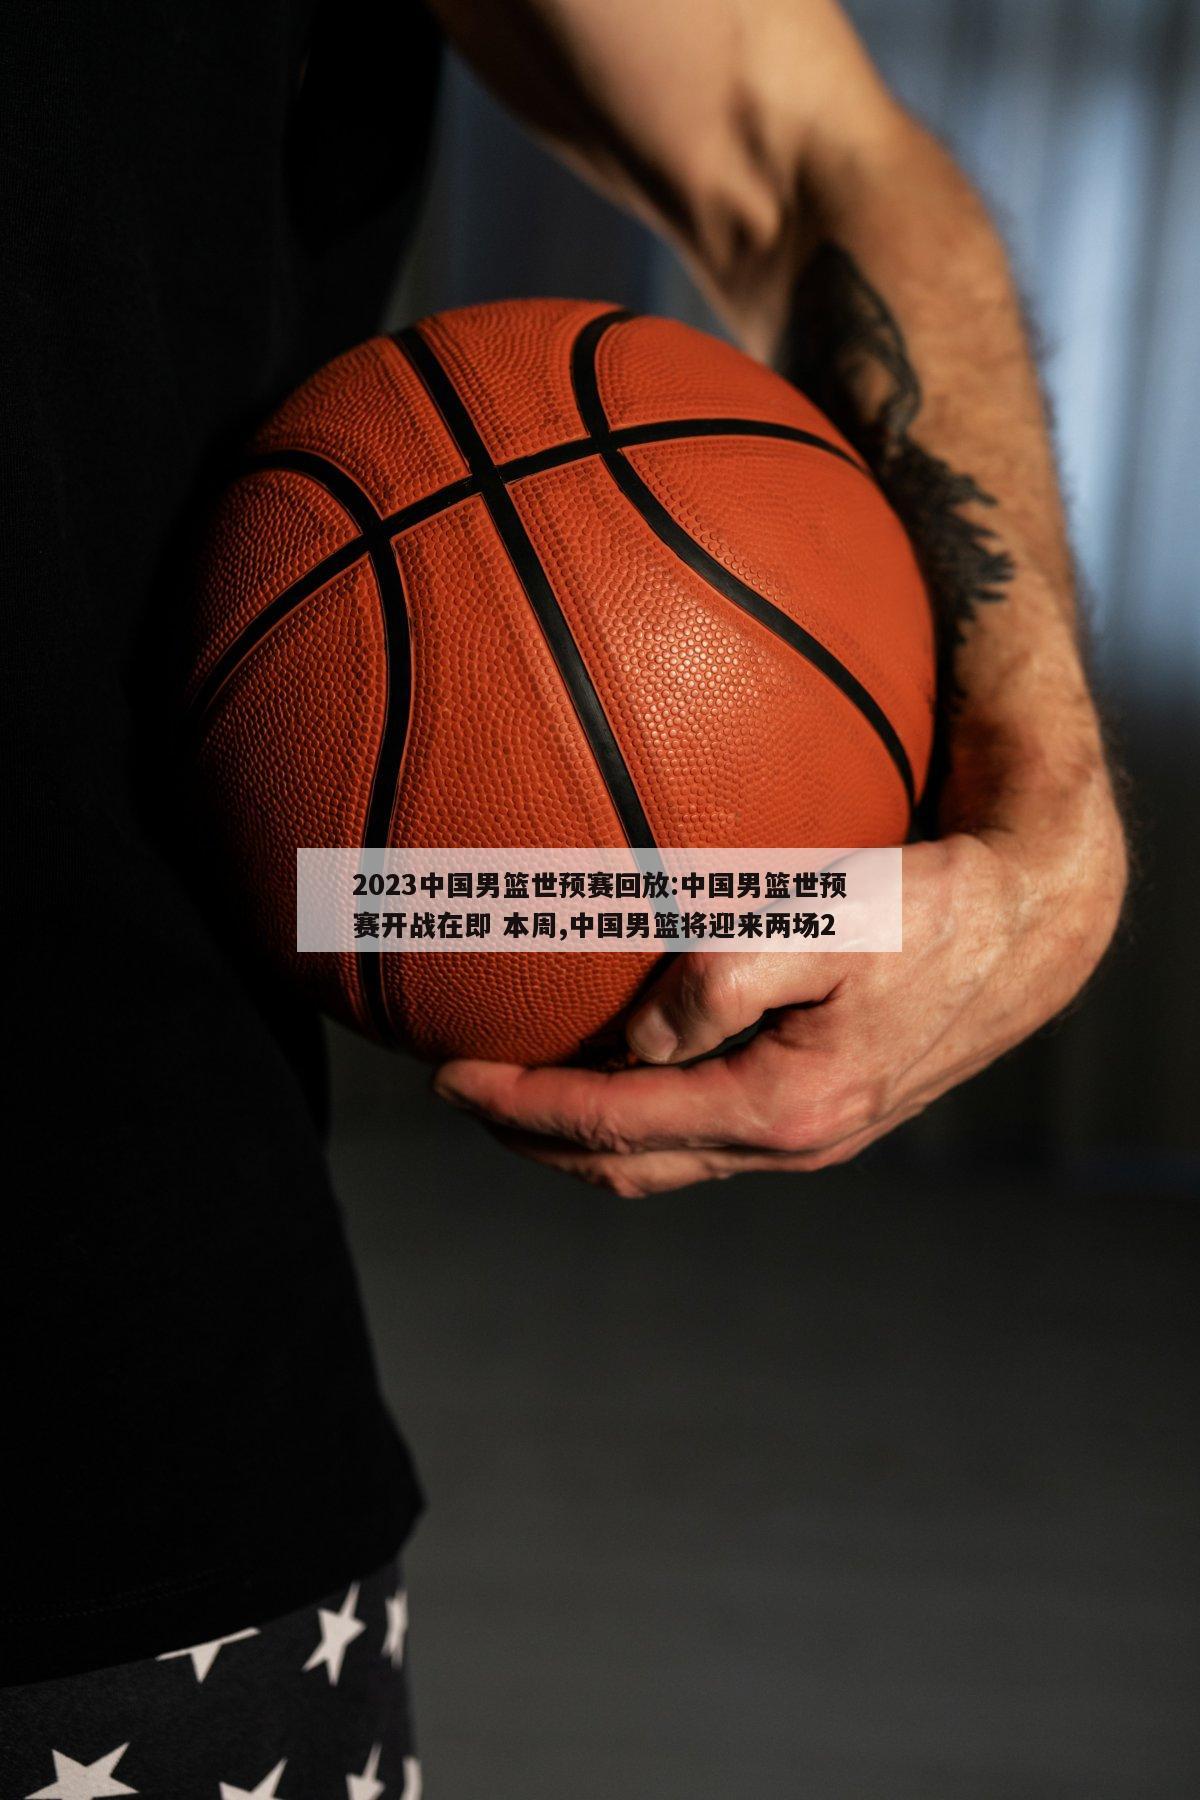 2023中国男篮世预赛回放:中国男篮世预赛开战在即 本周,中国男篮将迎来两场2